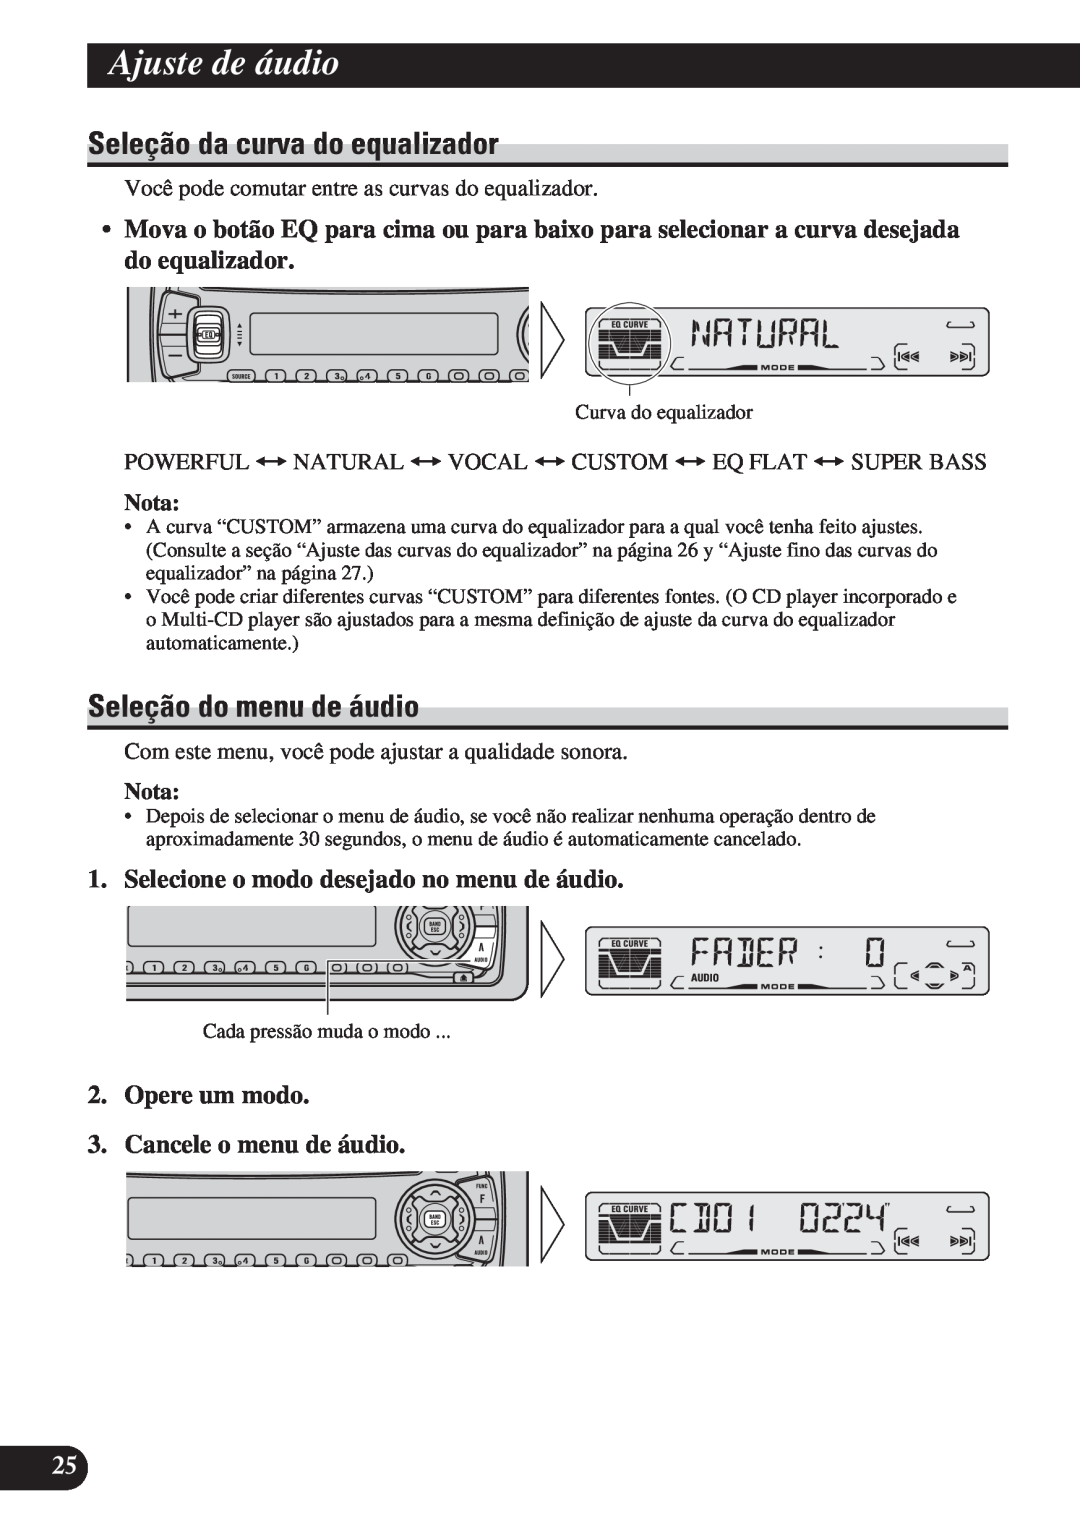 Pioneer DEH-P4150 operation manual Ajuste de áudio, Seleção da curva do equalizador, Seleção do menu de áudio, Nota 